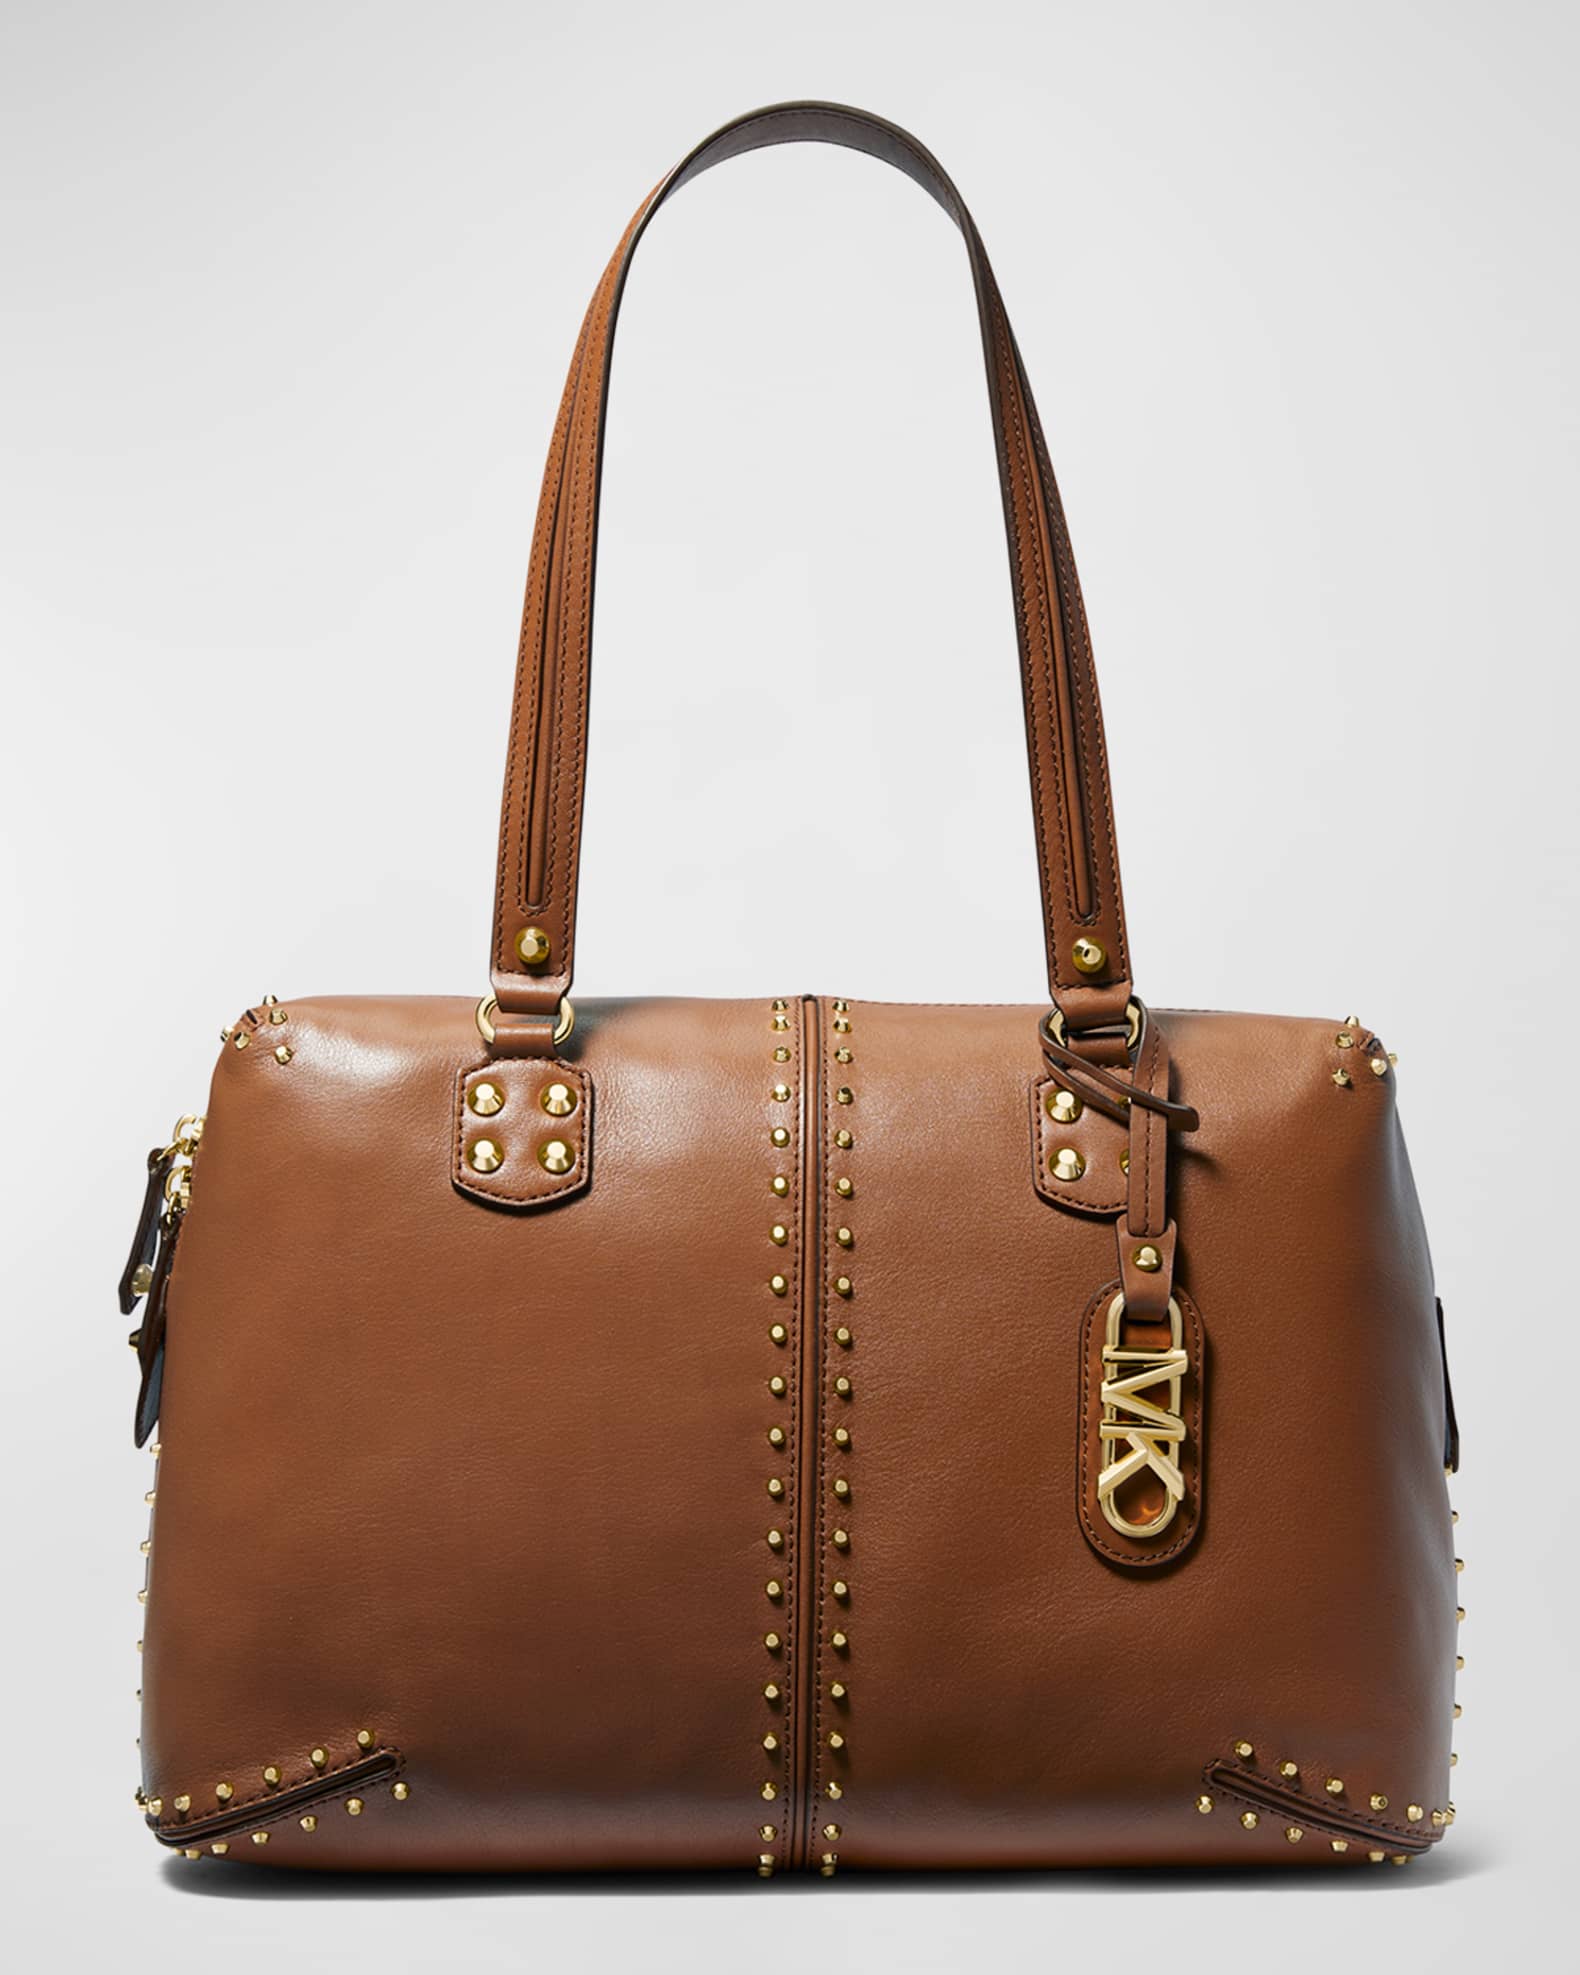 Astor Large Studded Leather Shoulder Bag